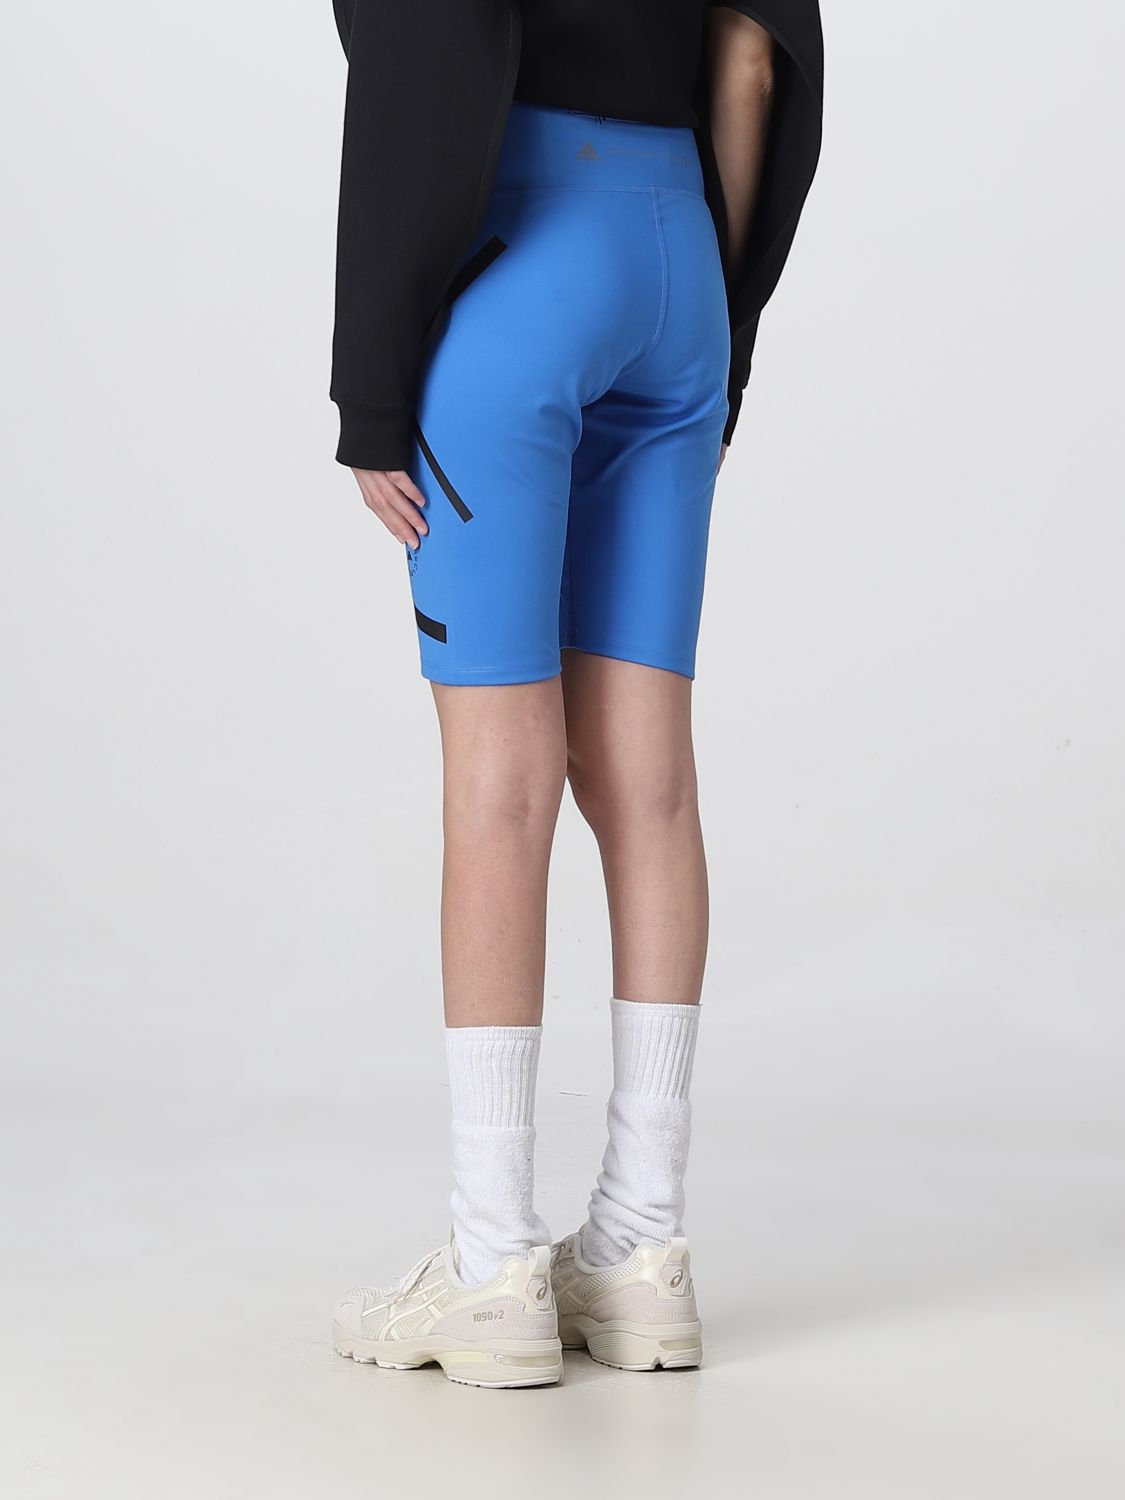 Hose Adidas By Stella Mccartney: Adidas By Stella Mccartney Damen Hose blau 3